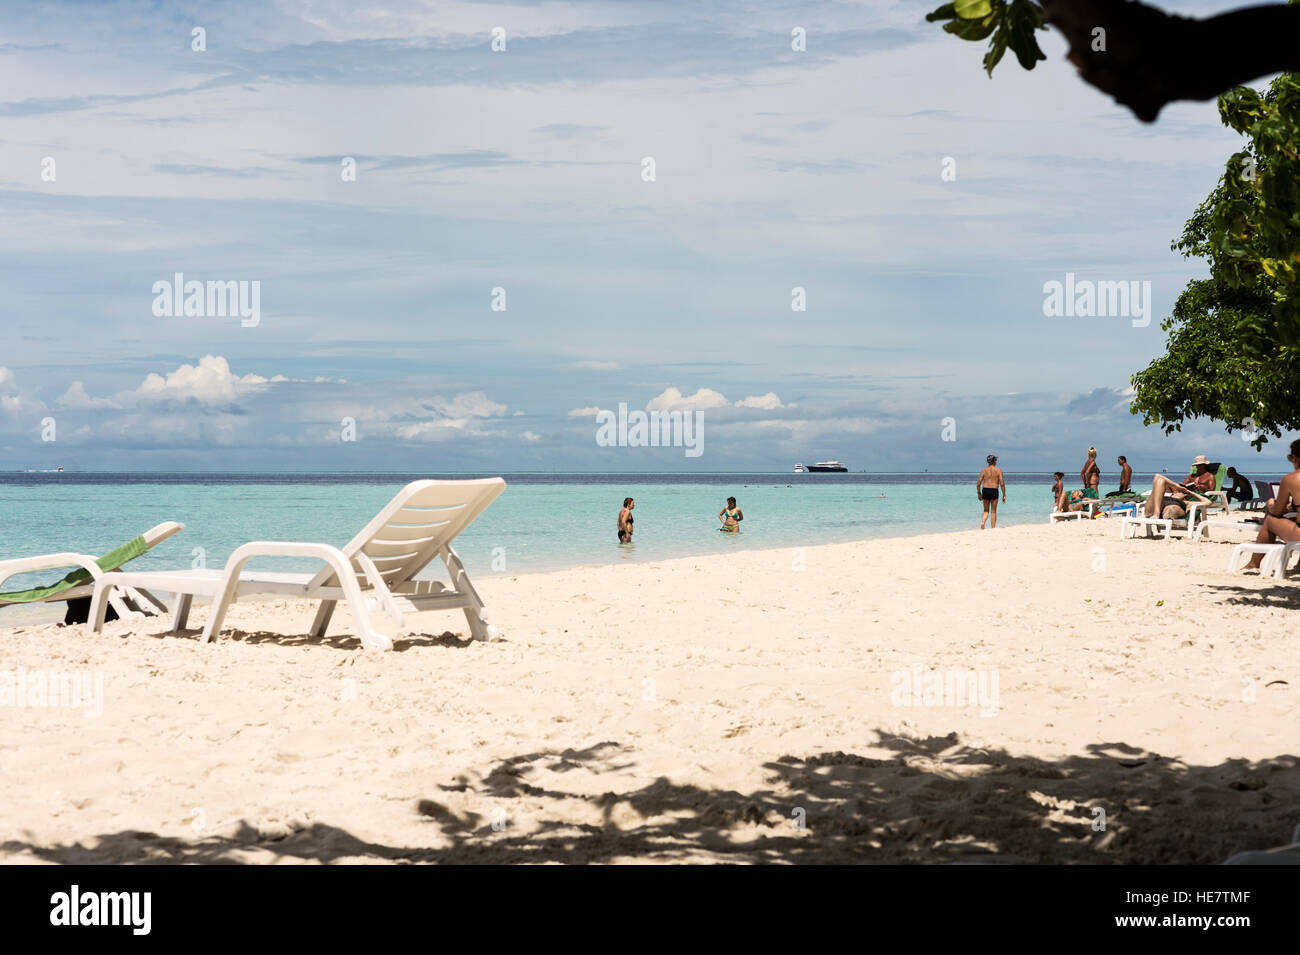 Beach at Biyahdoo, Maldive Islands Stock Photo